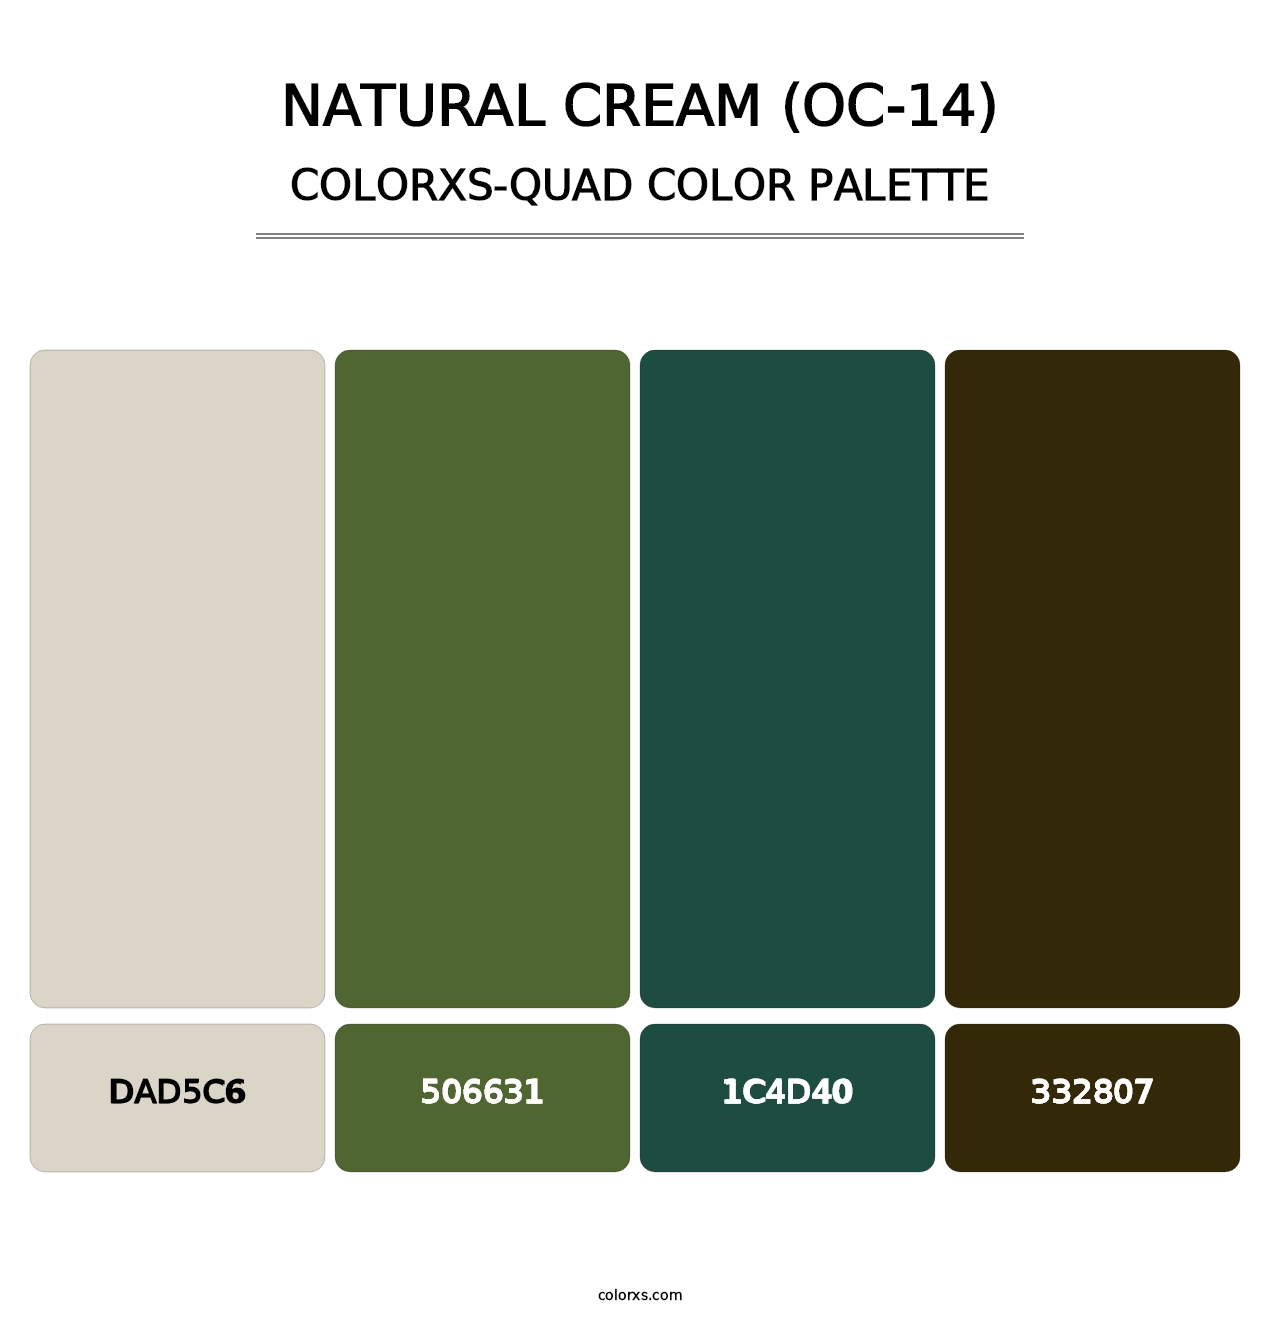 Natural Cream (OC-14) - Colorxs Quad Palette